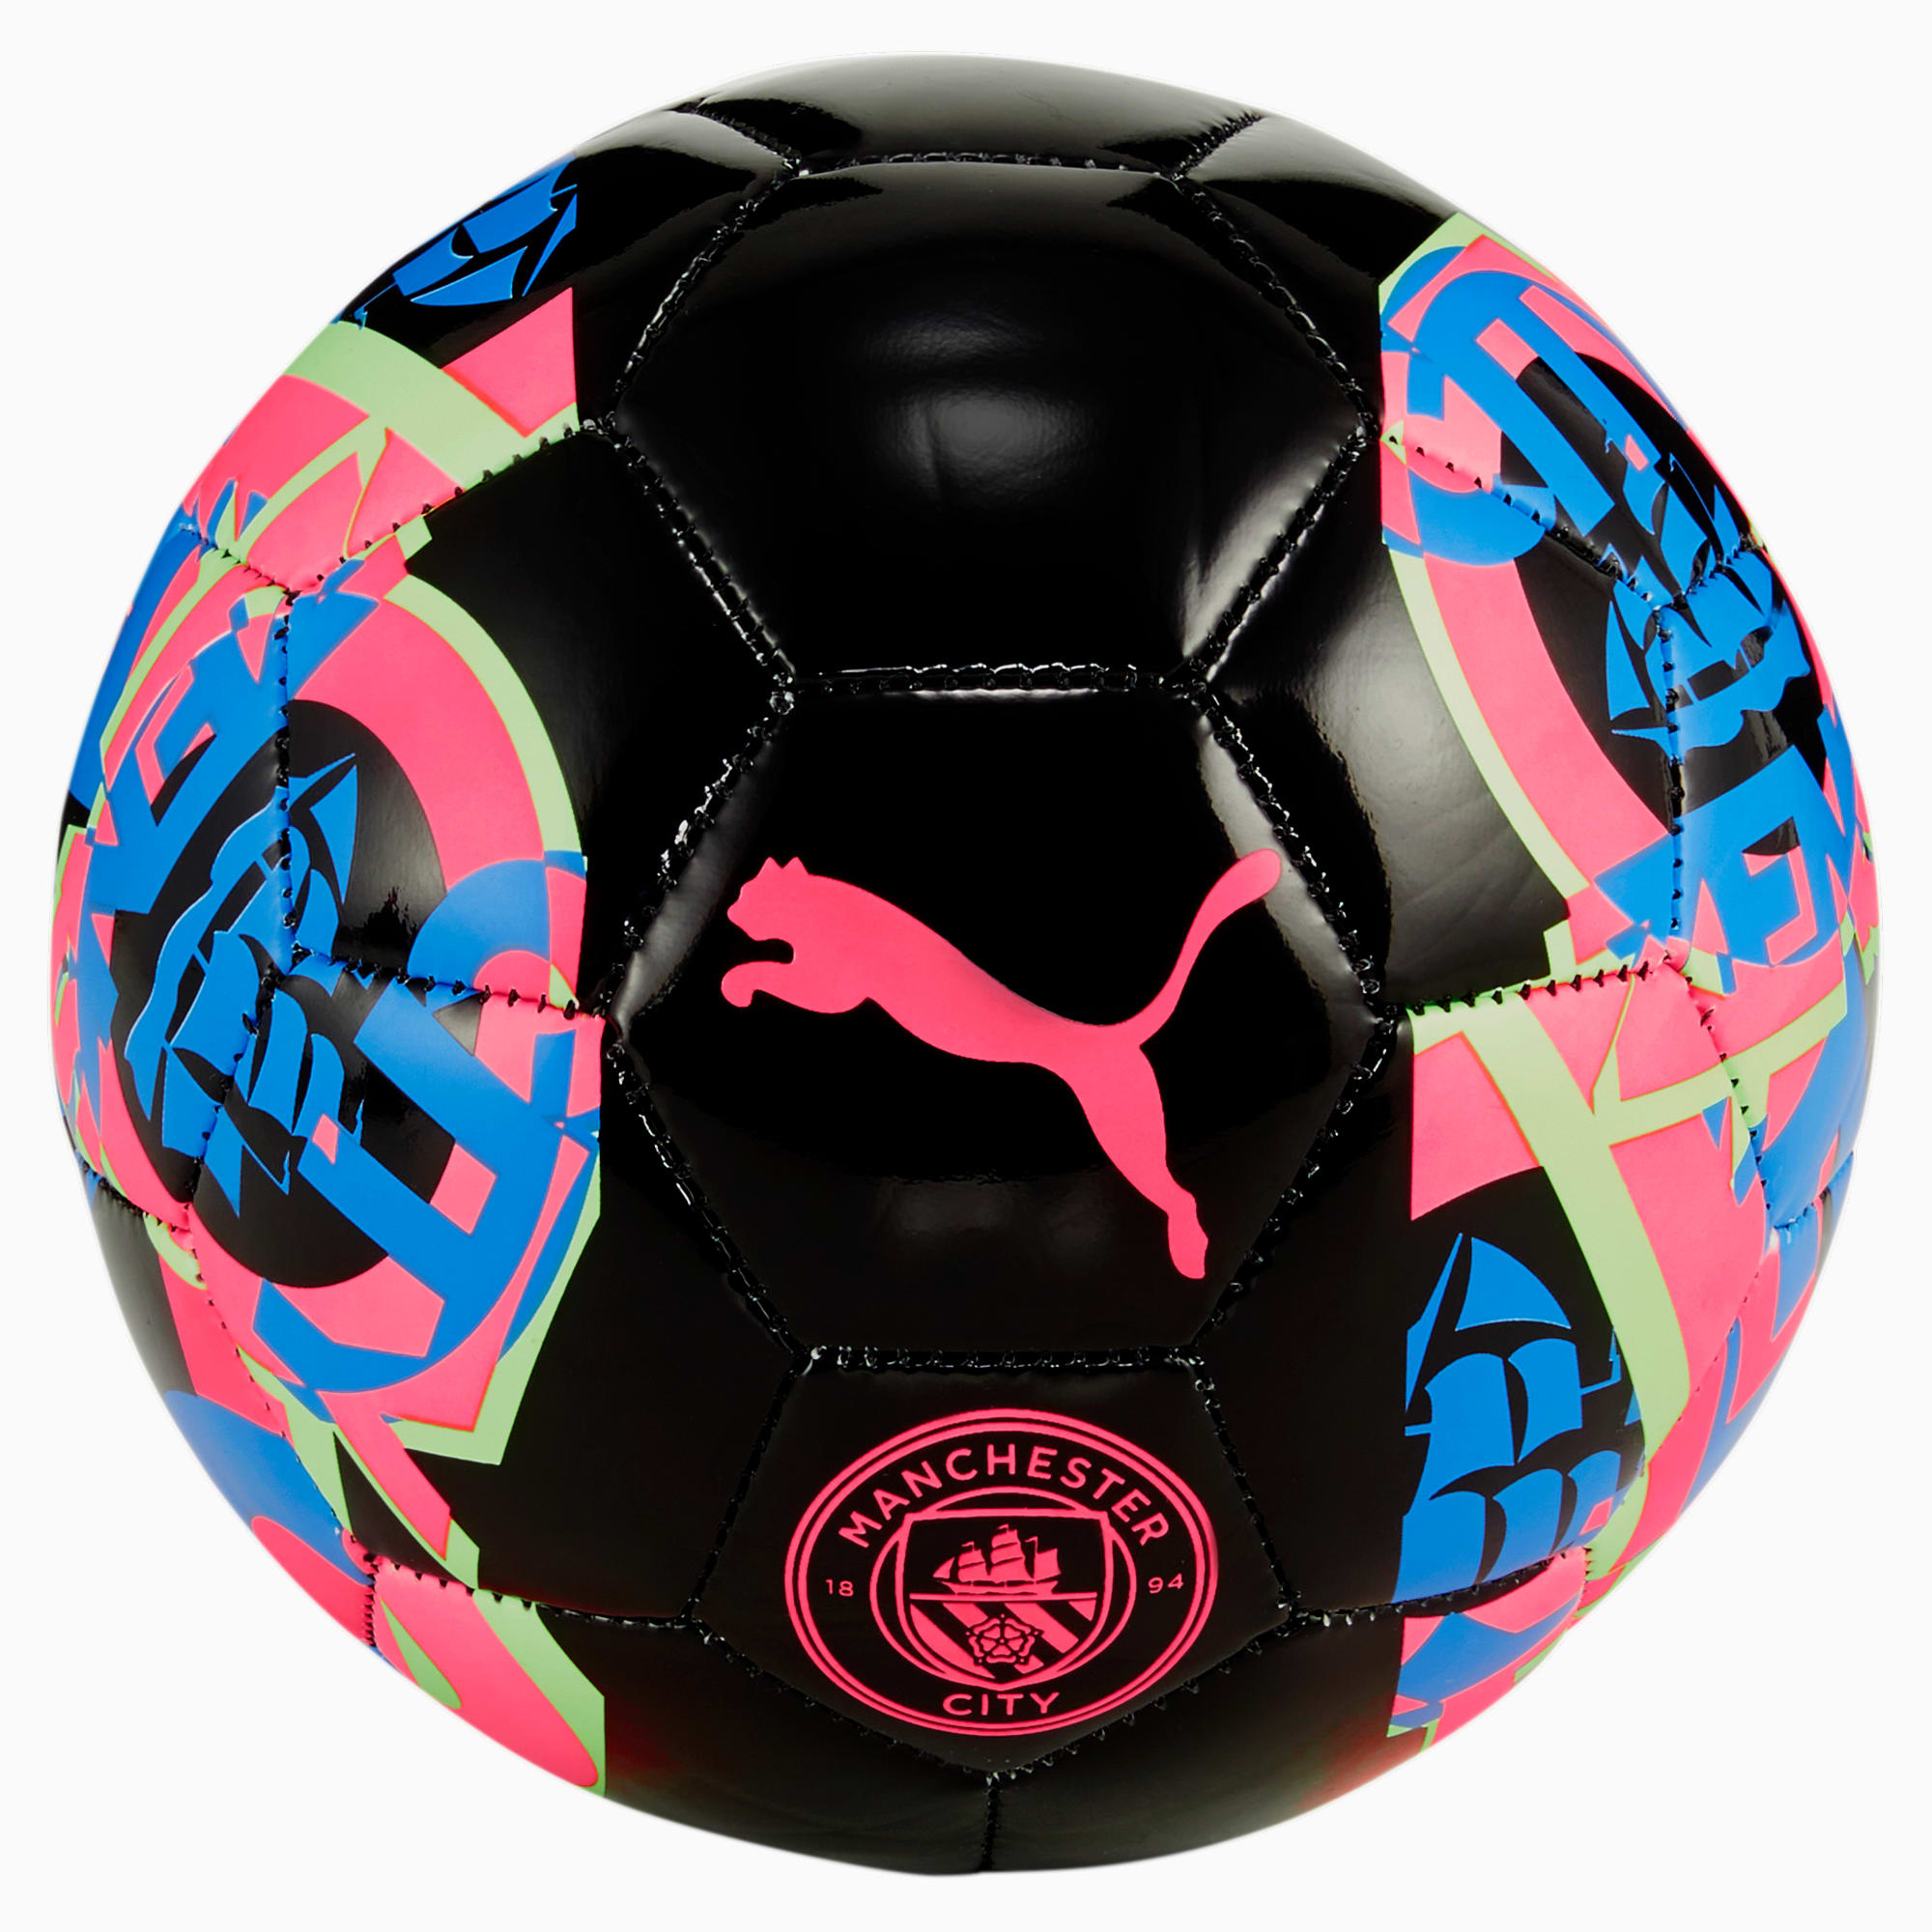 Mini Pallone Da Calcio Manchester City FtblCore, Nero/Rosa/Verde/Altro